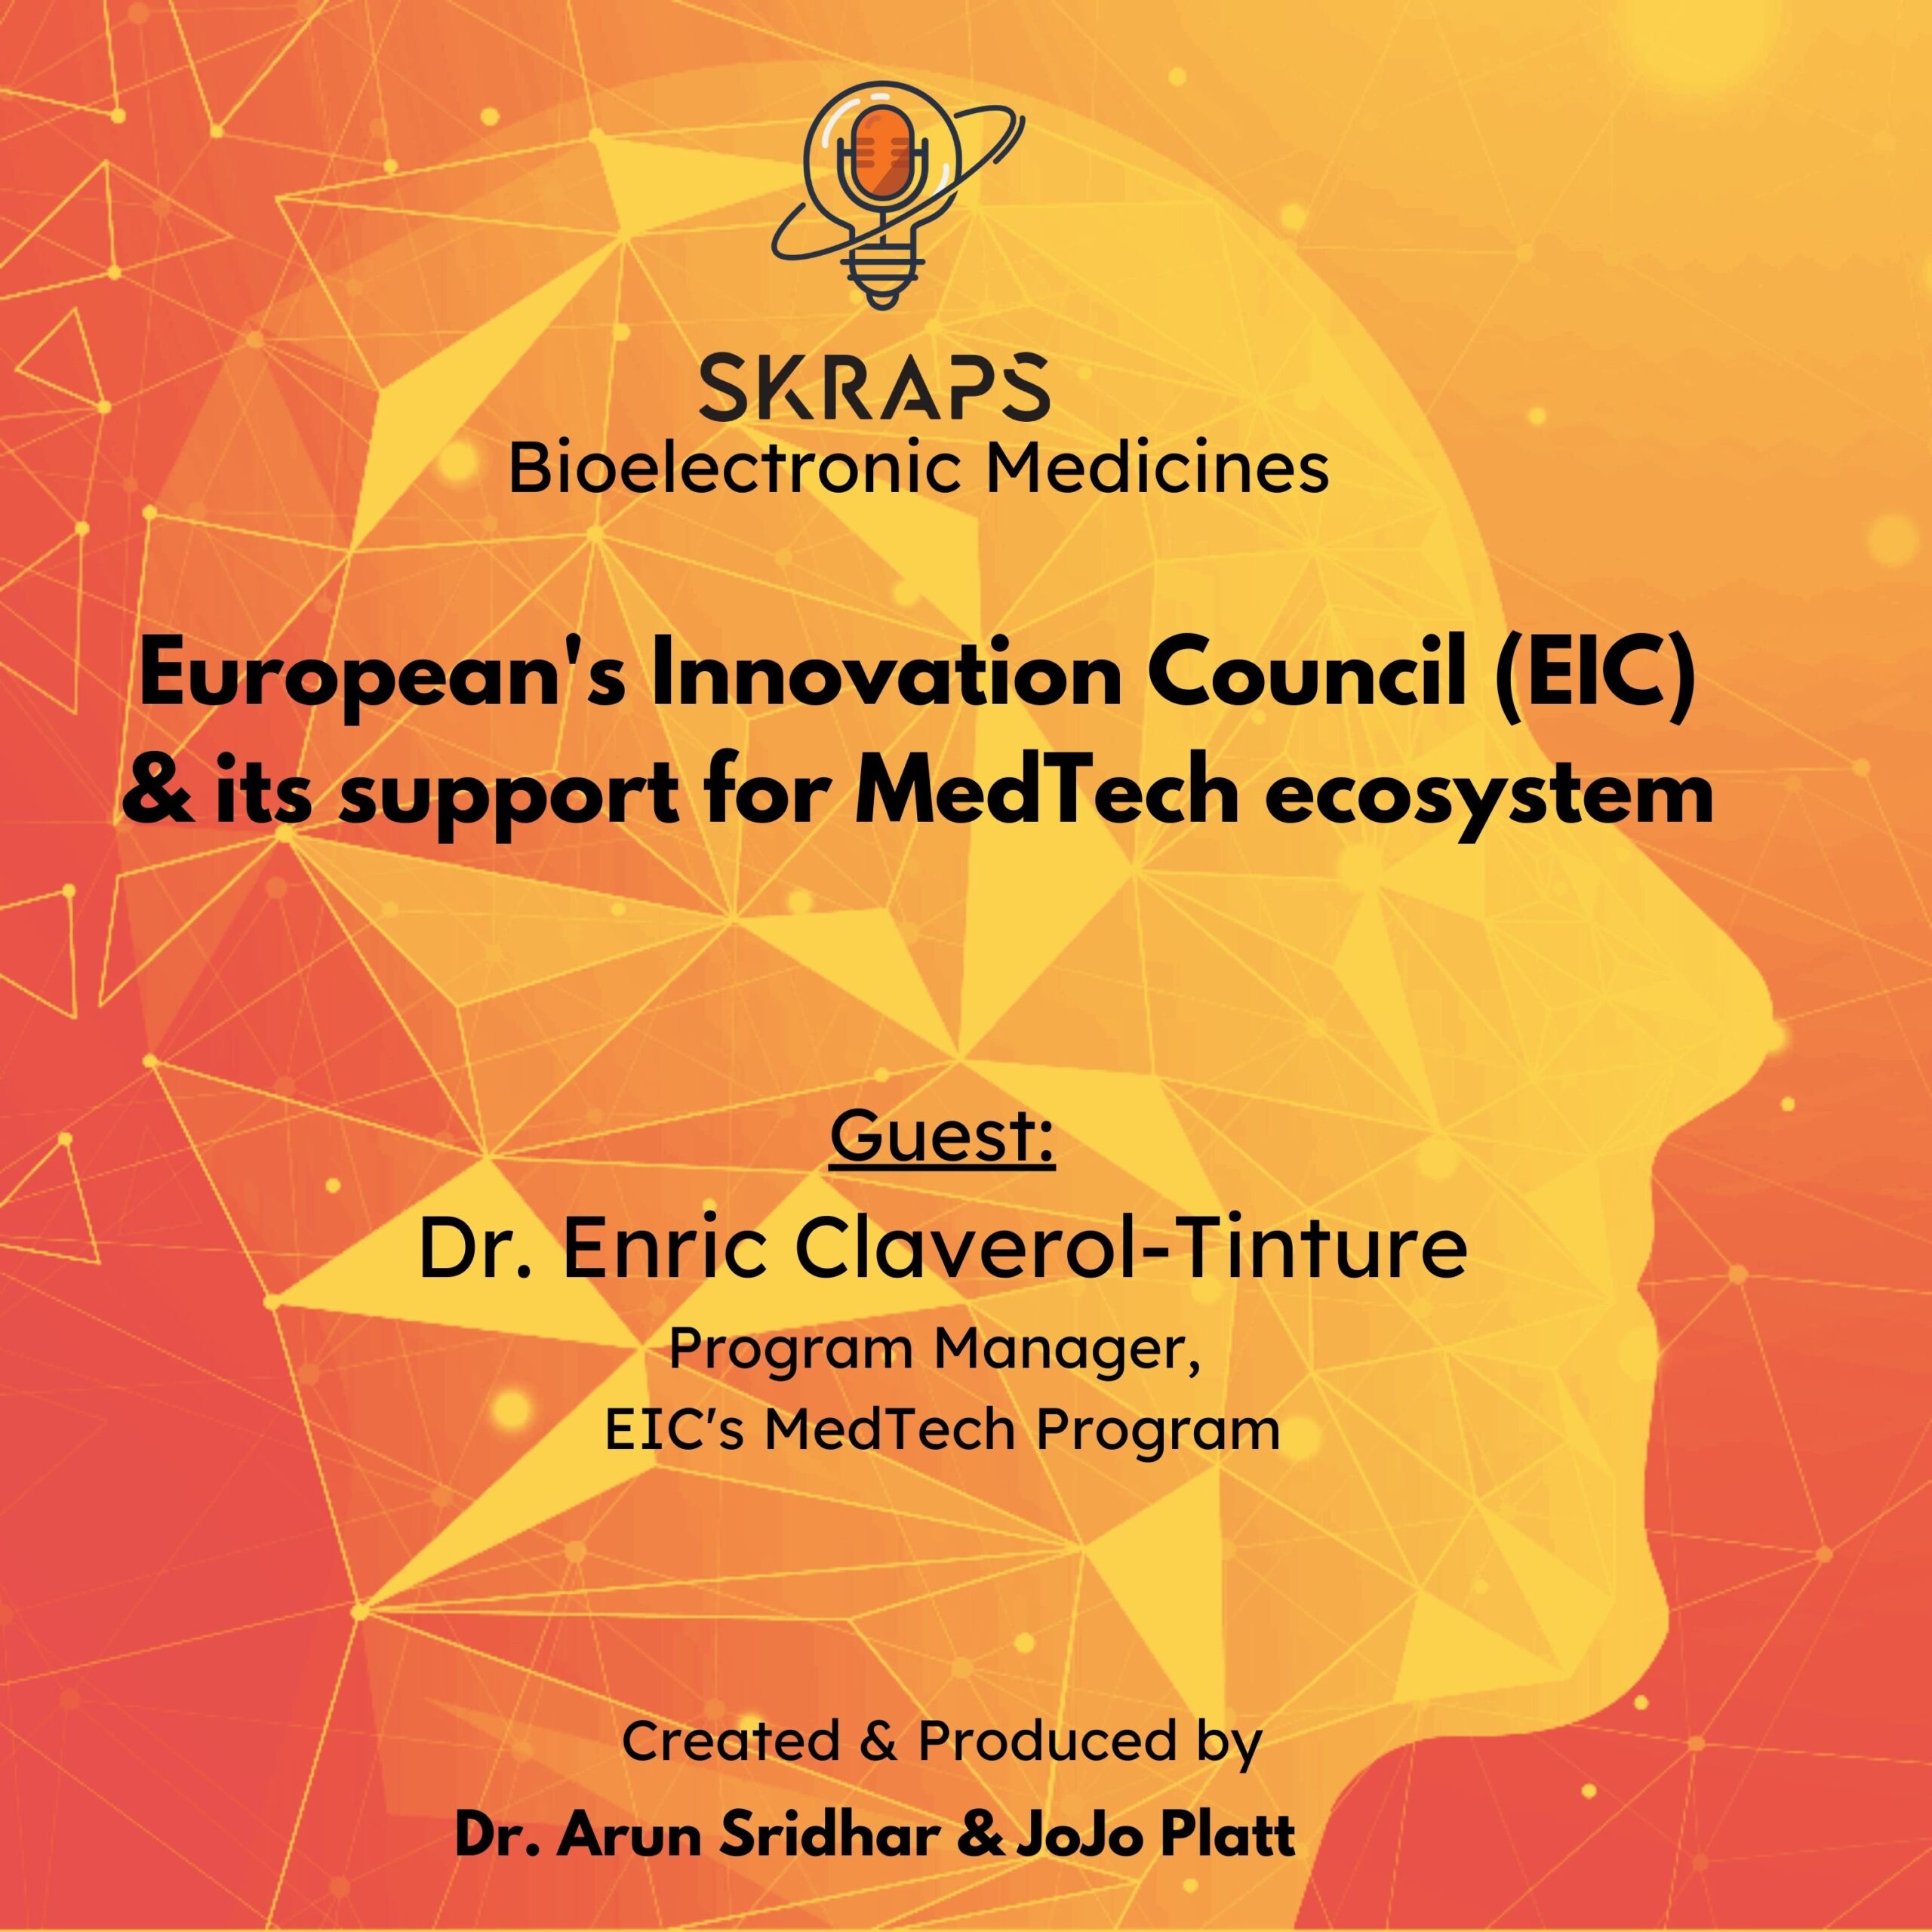 European Innovation Council & NeuroTechnology/MedTech funding